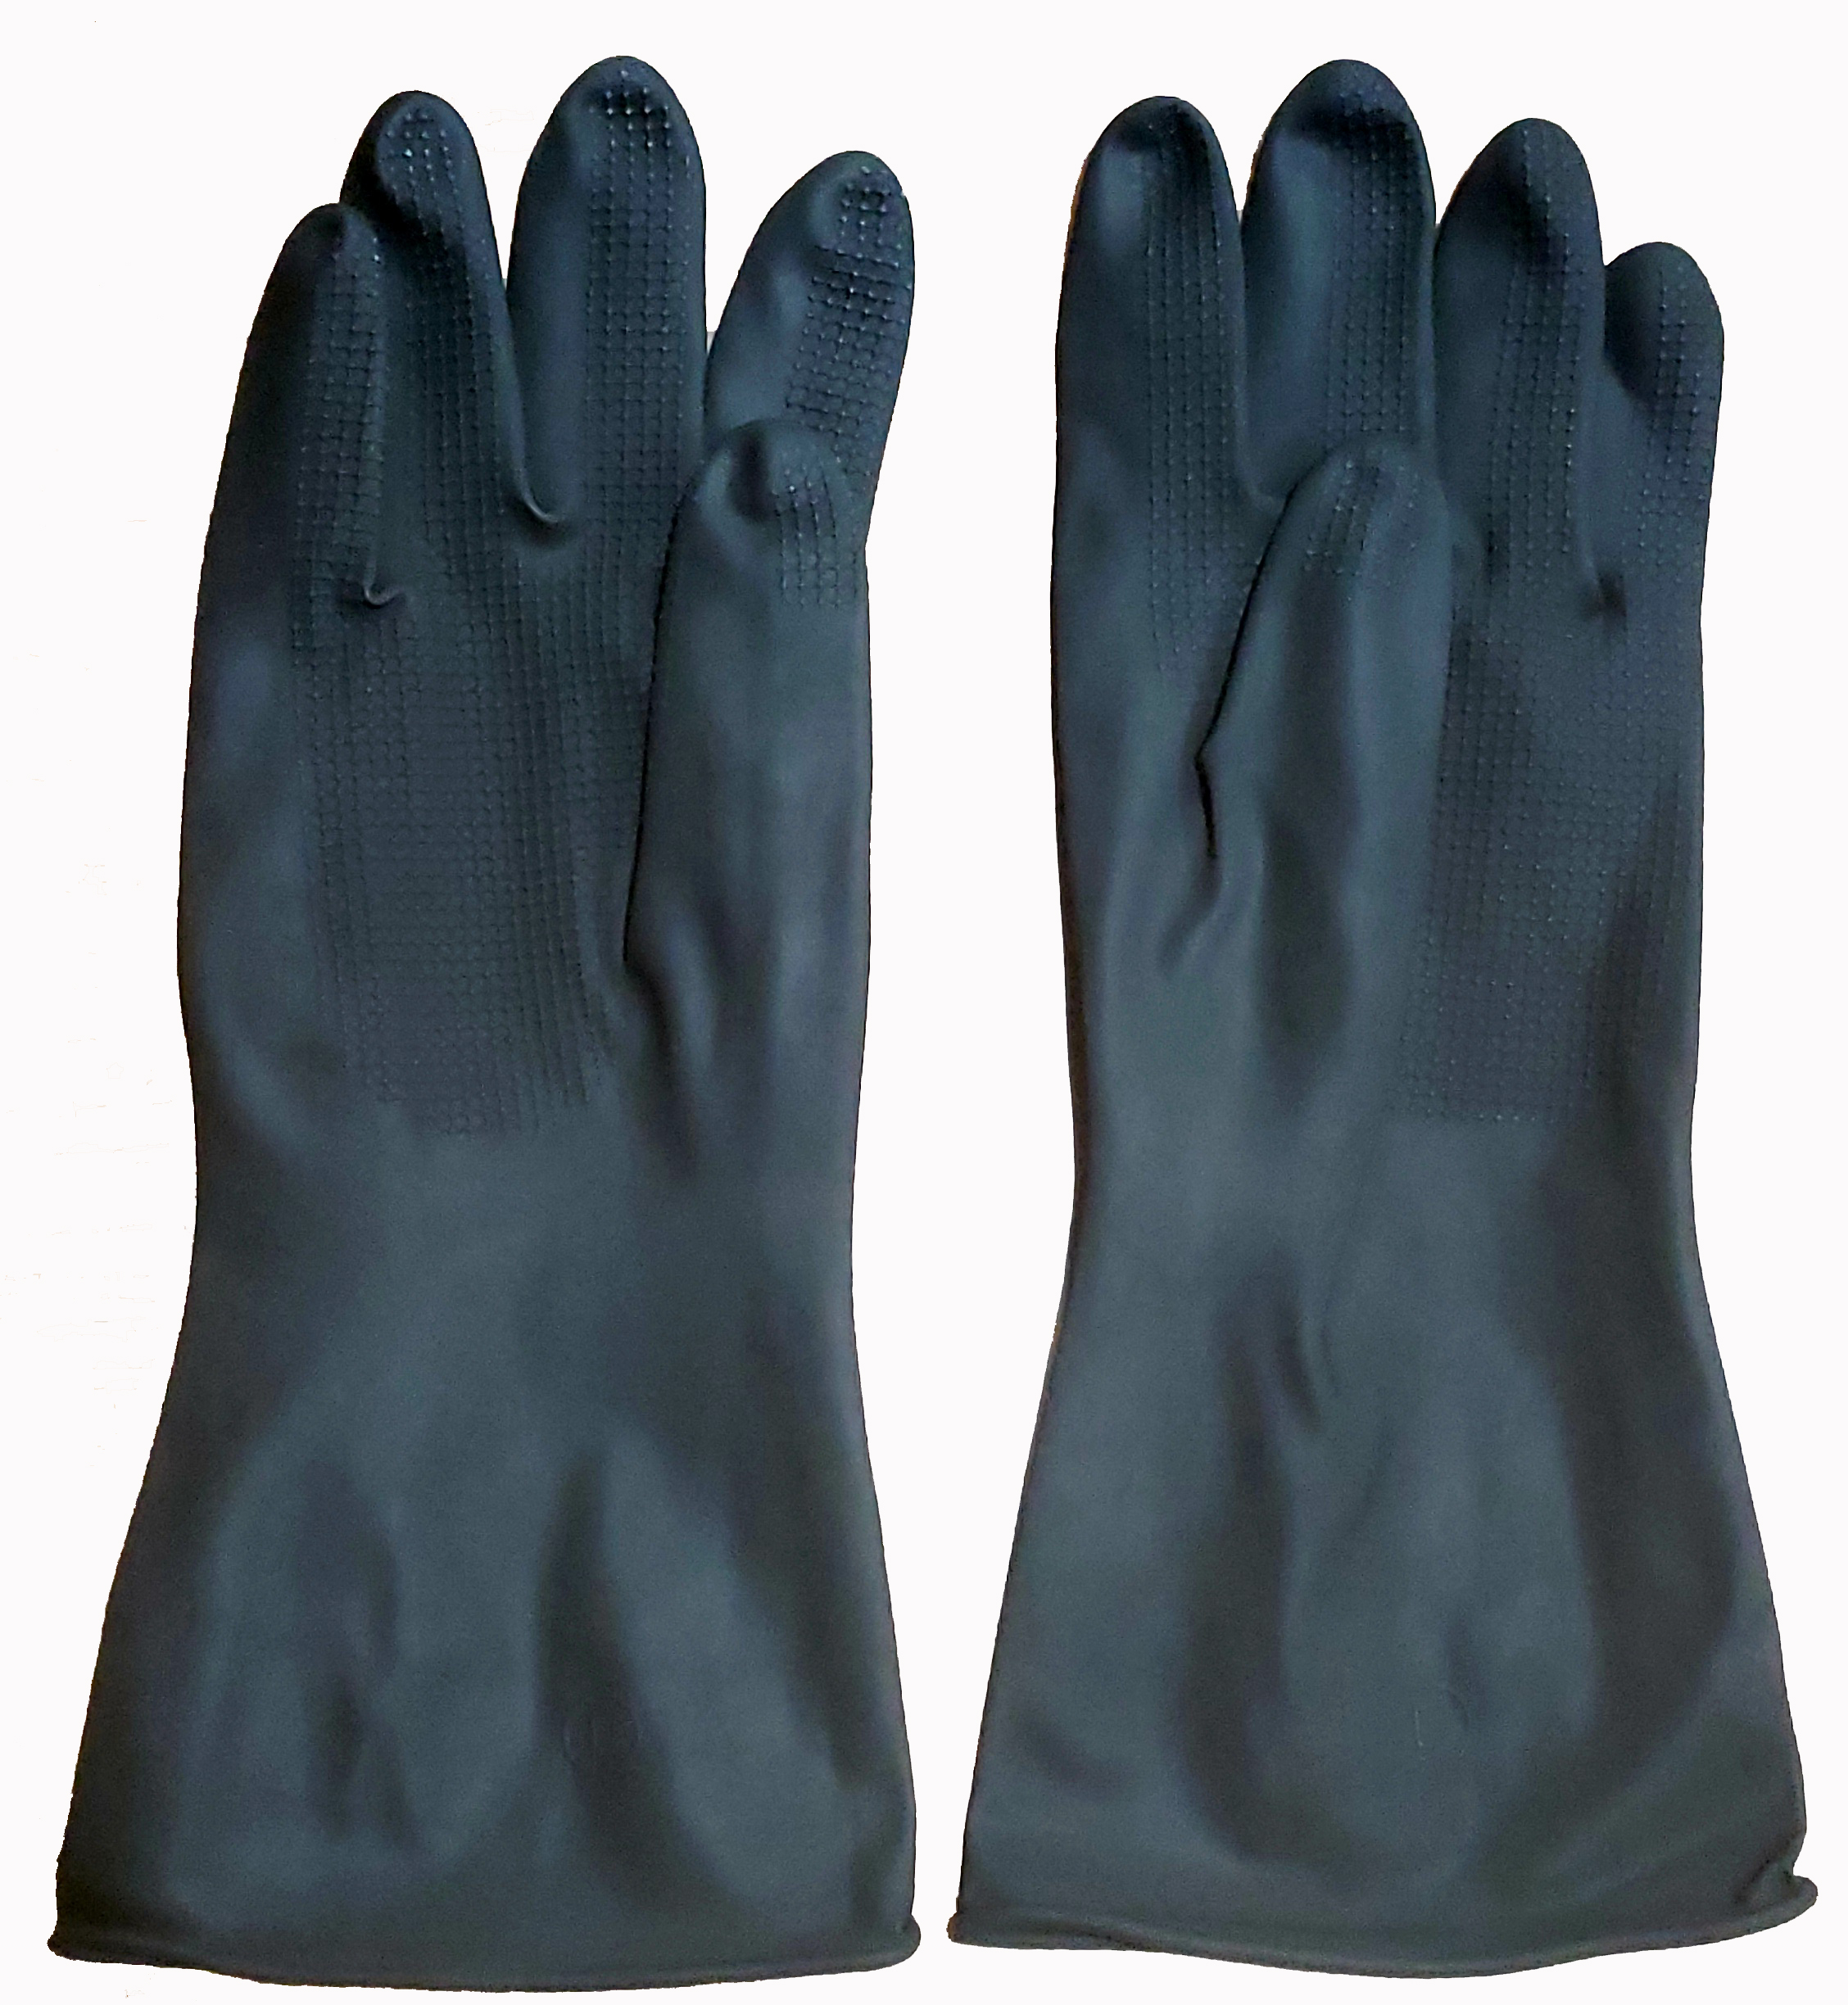 Gloves for all JSP Sandblasters, 1 pair